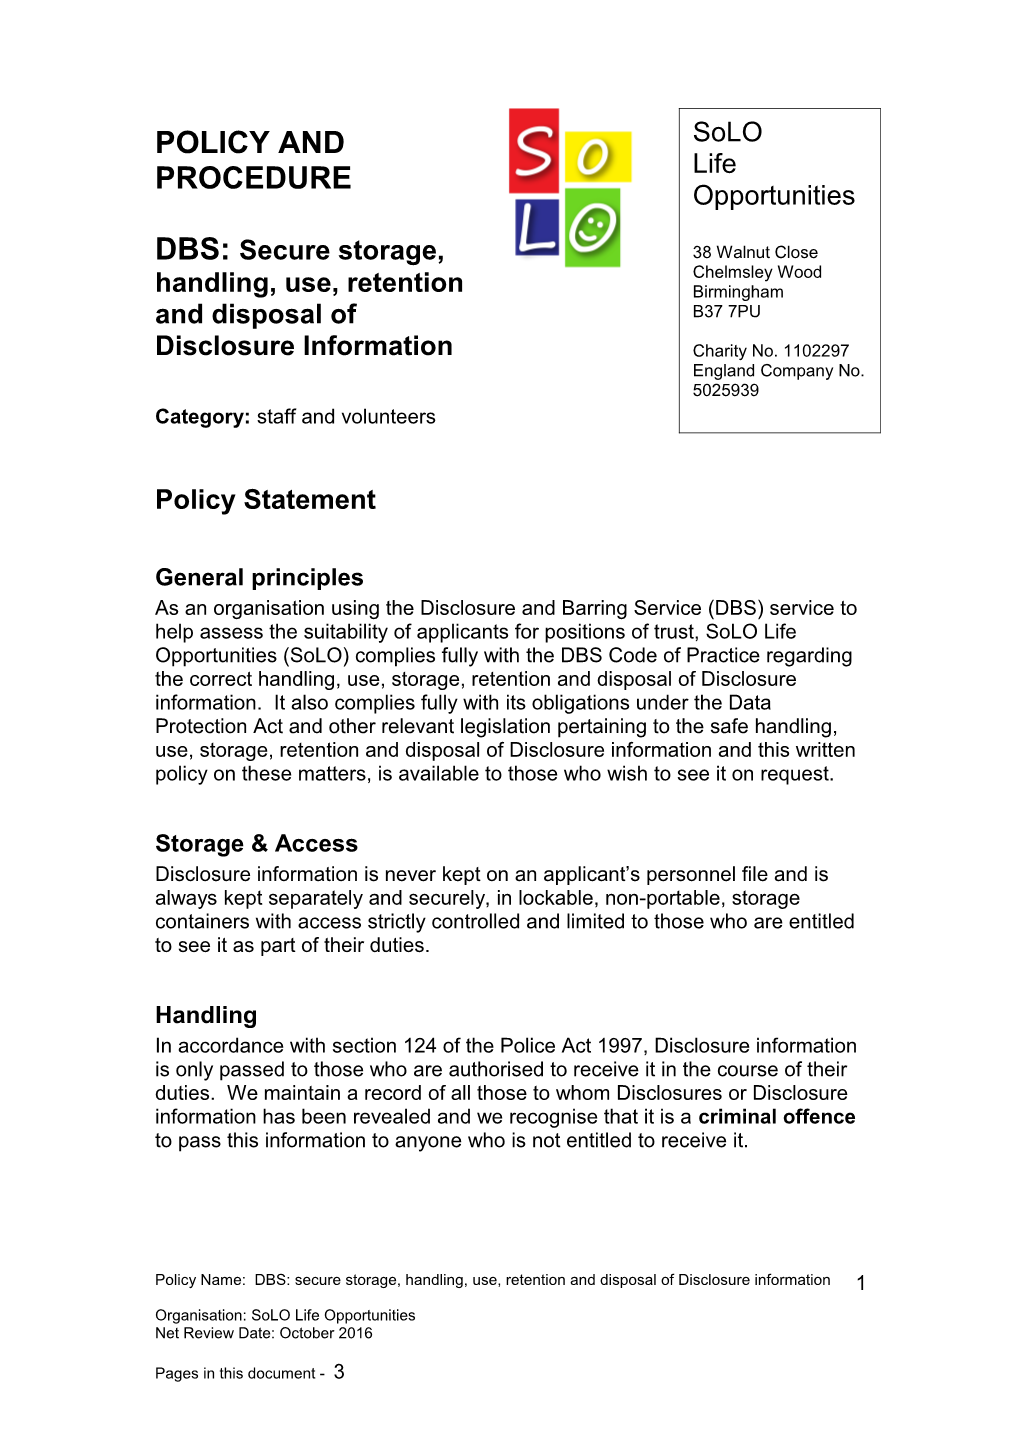 DBS: Secure Storage